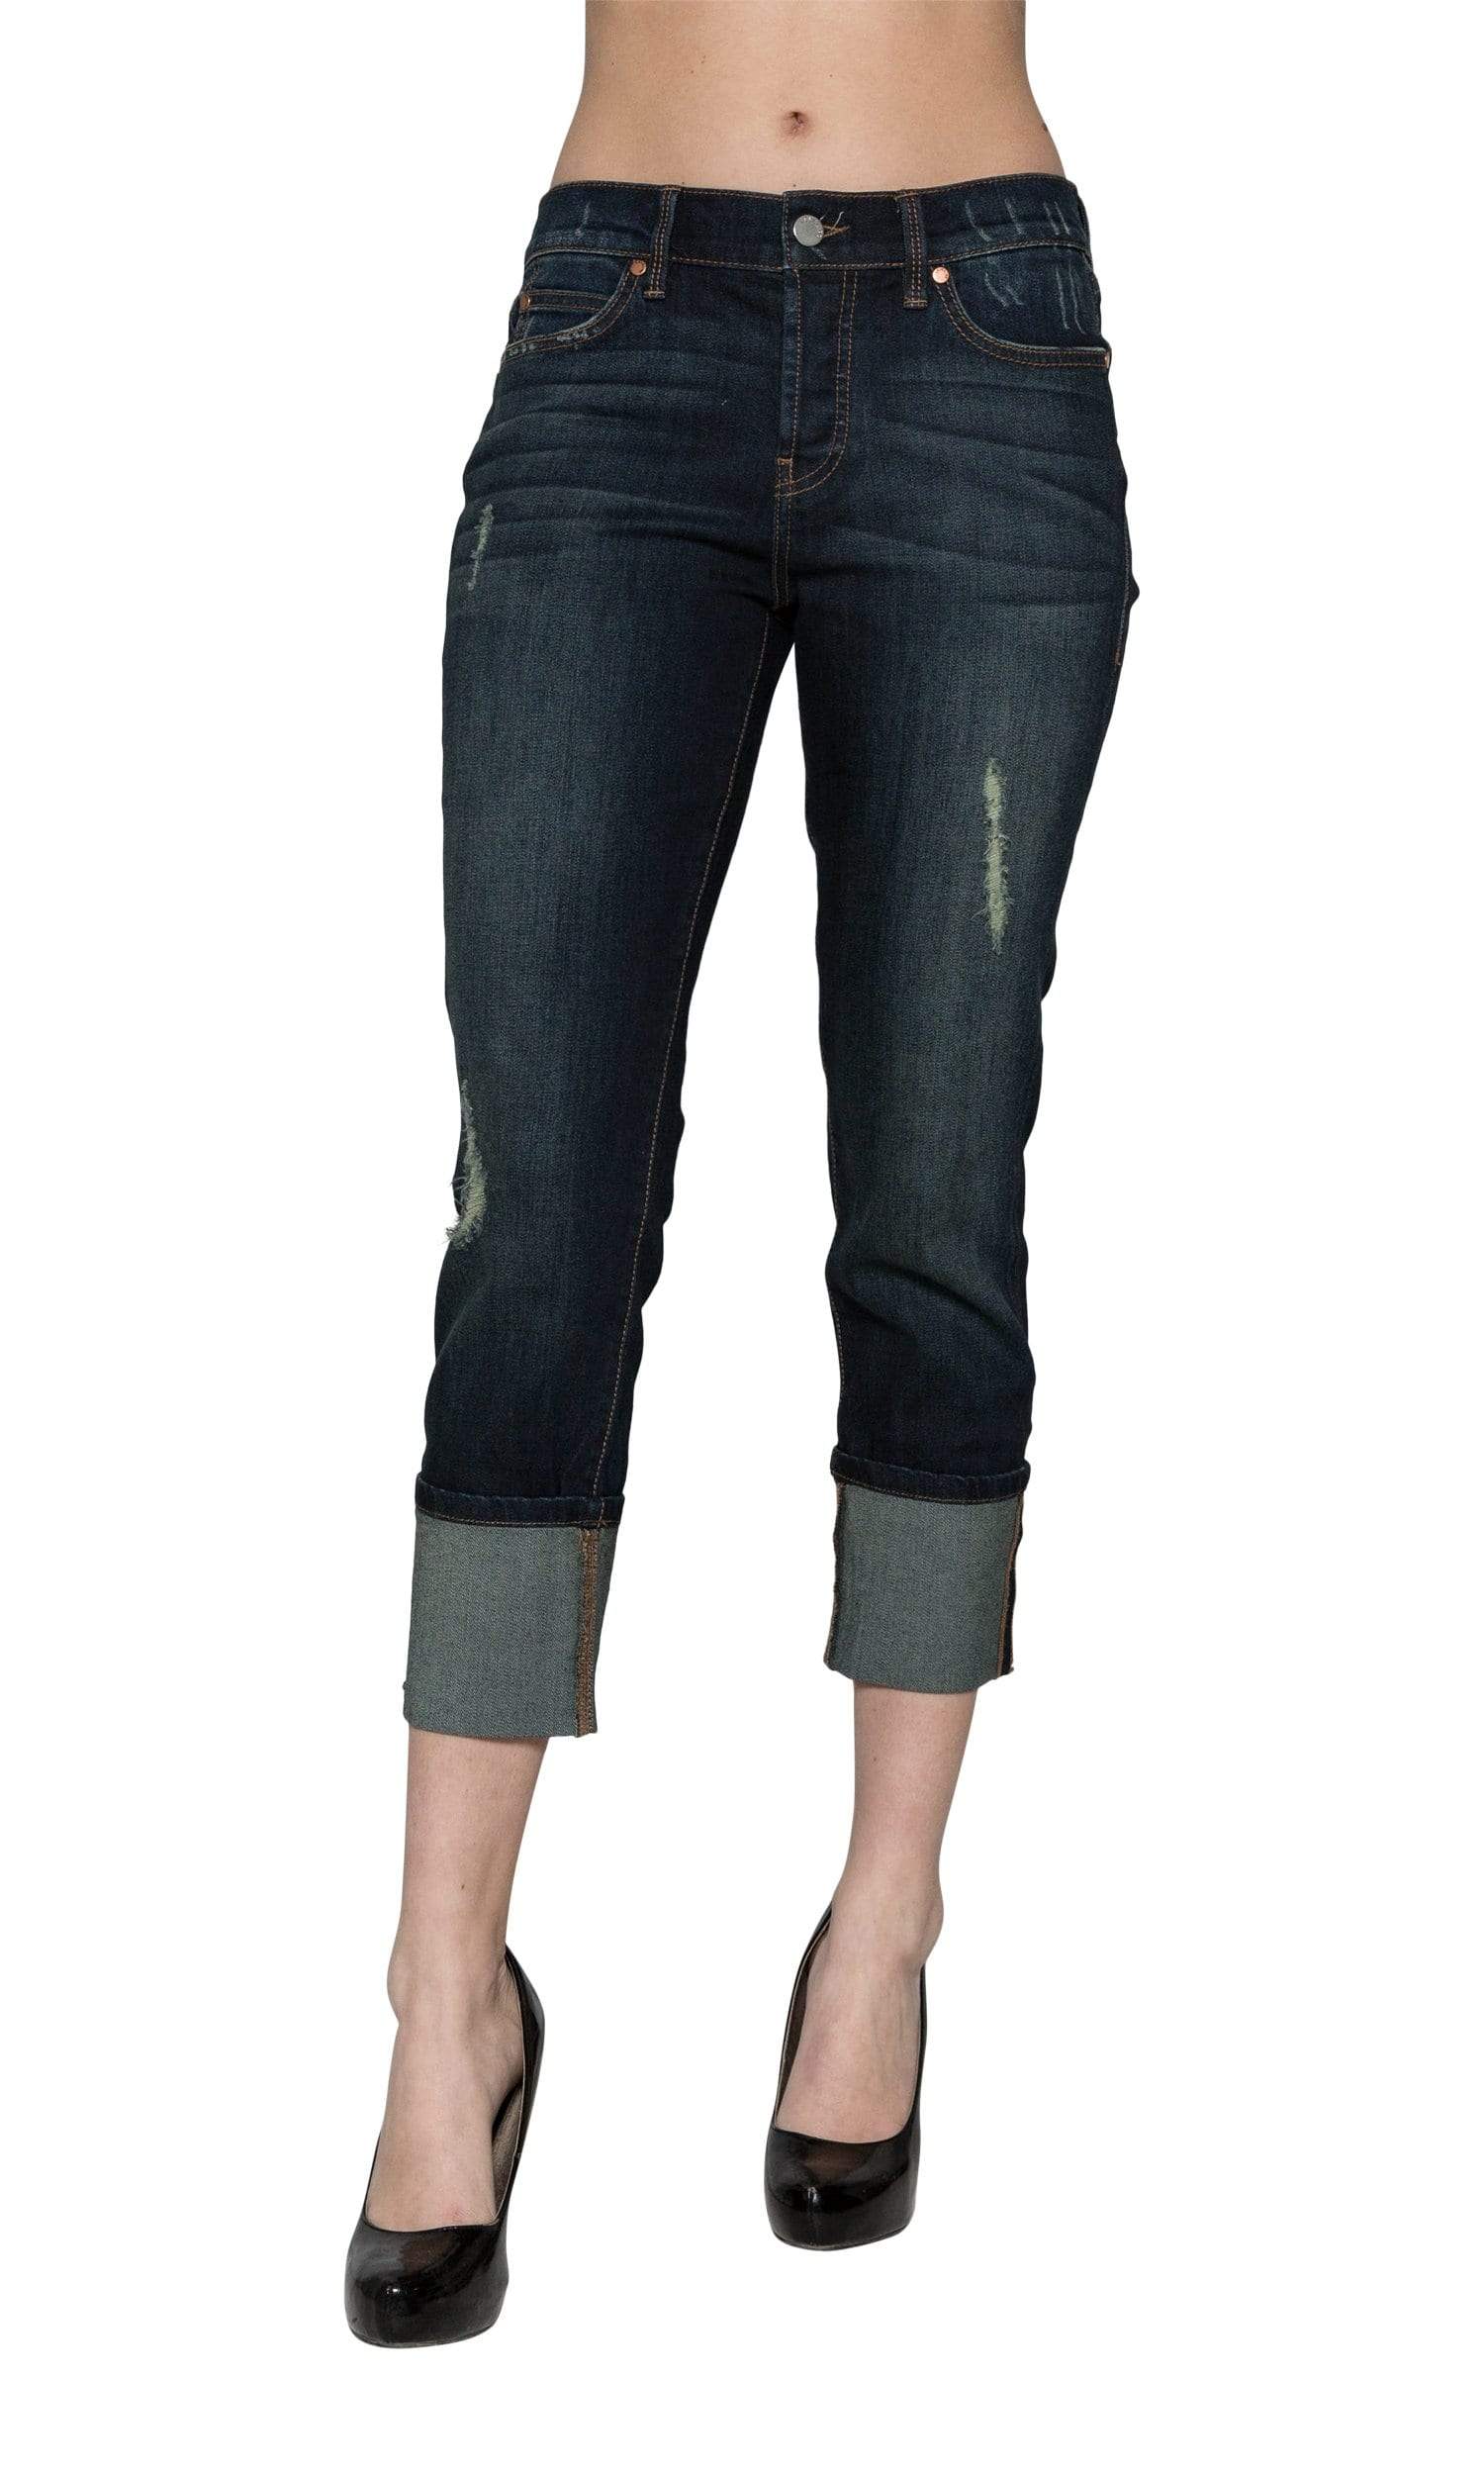 fringe bottom capri jeans